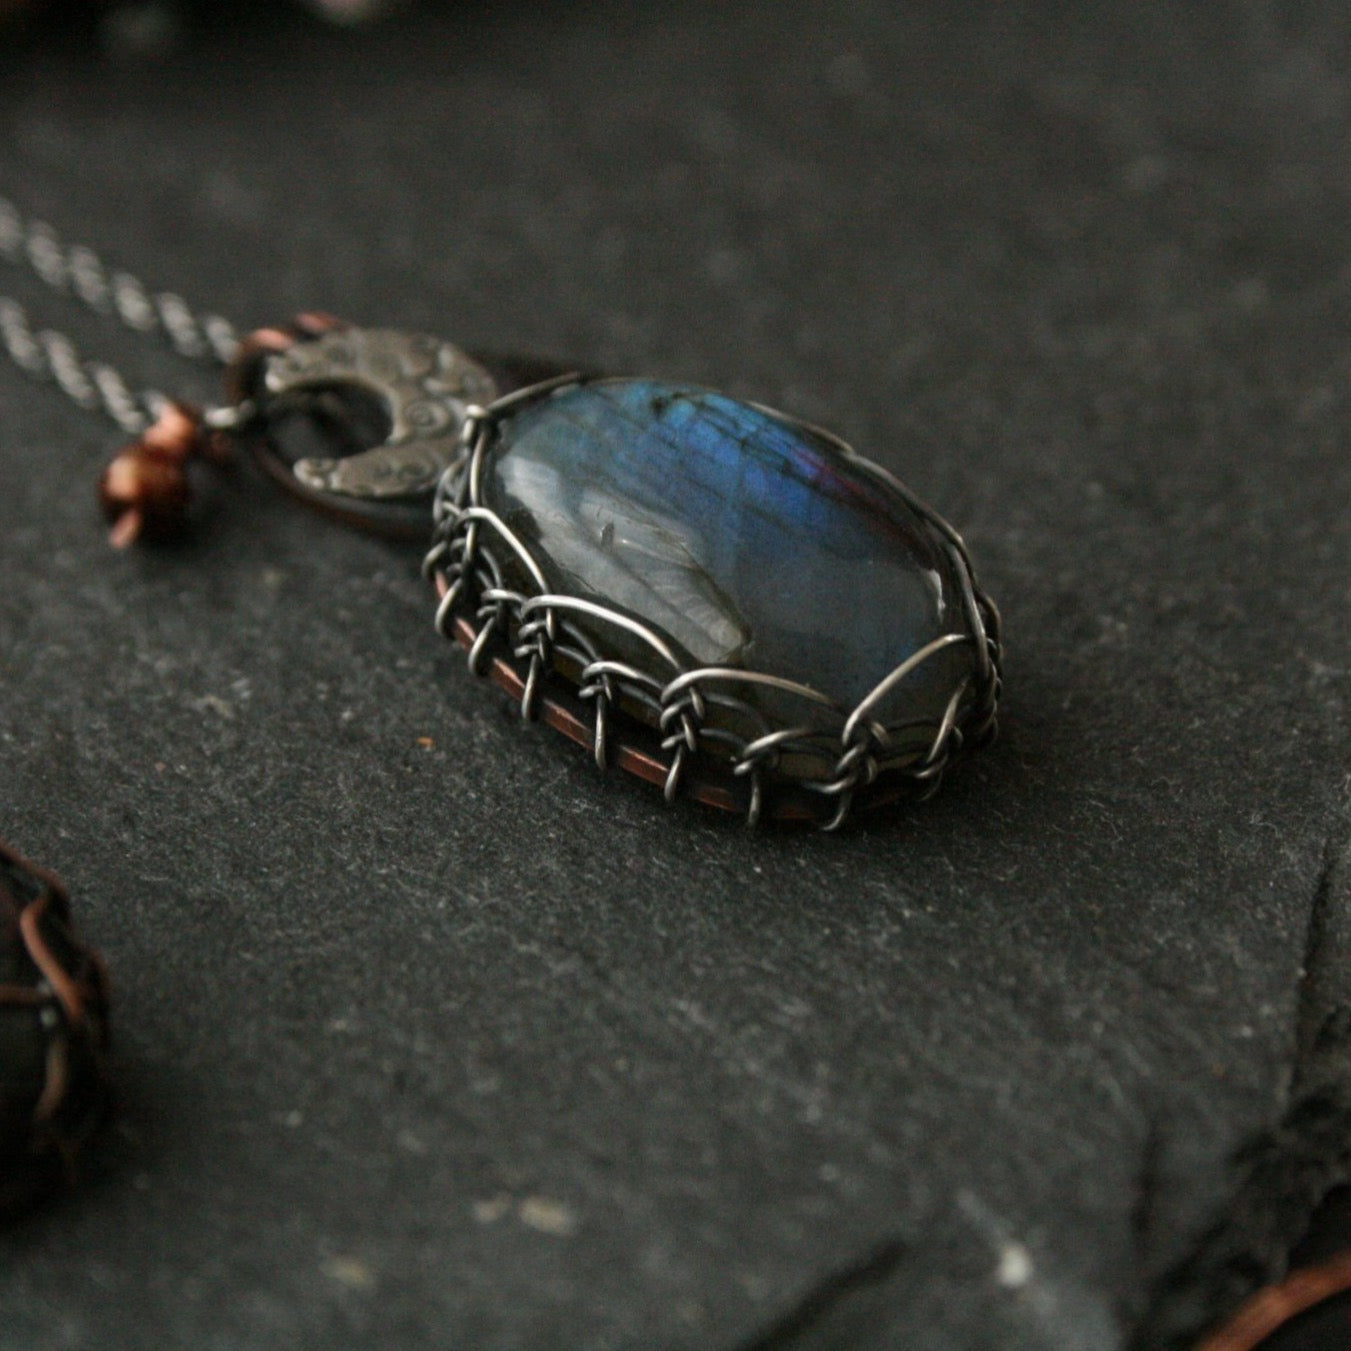 Cloudy Moon Viking Knit Labradorite Necklace - Andune Jewellery